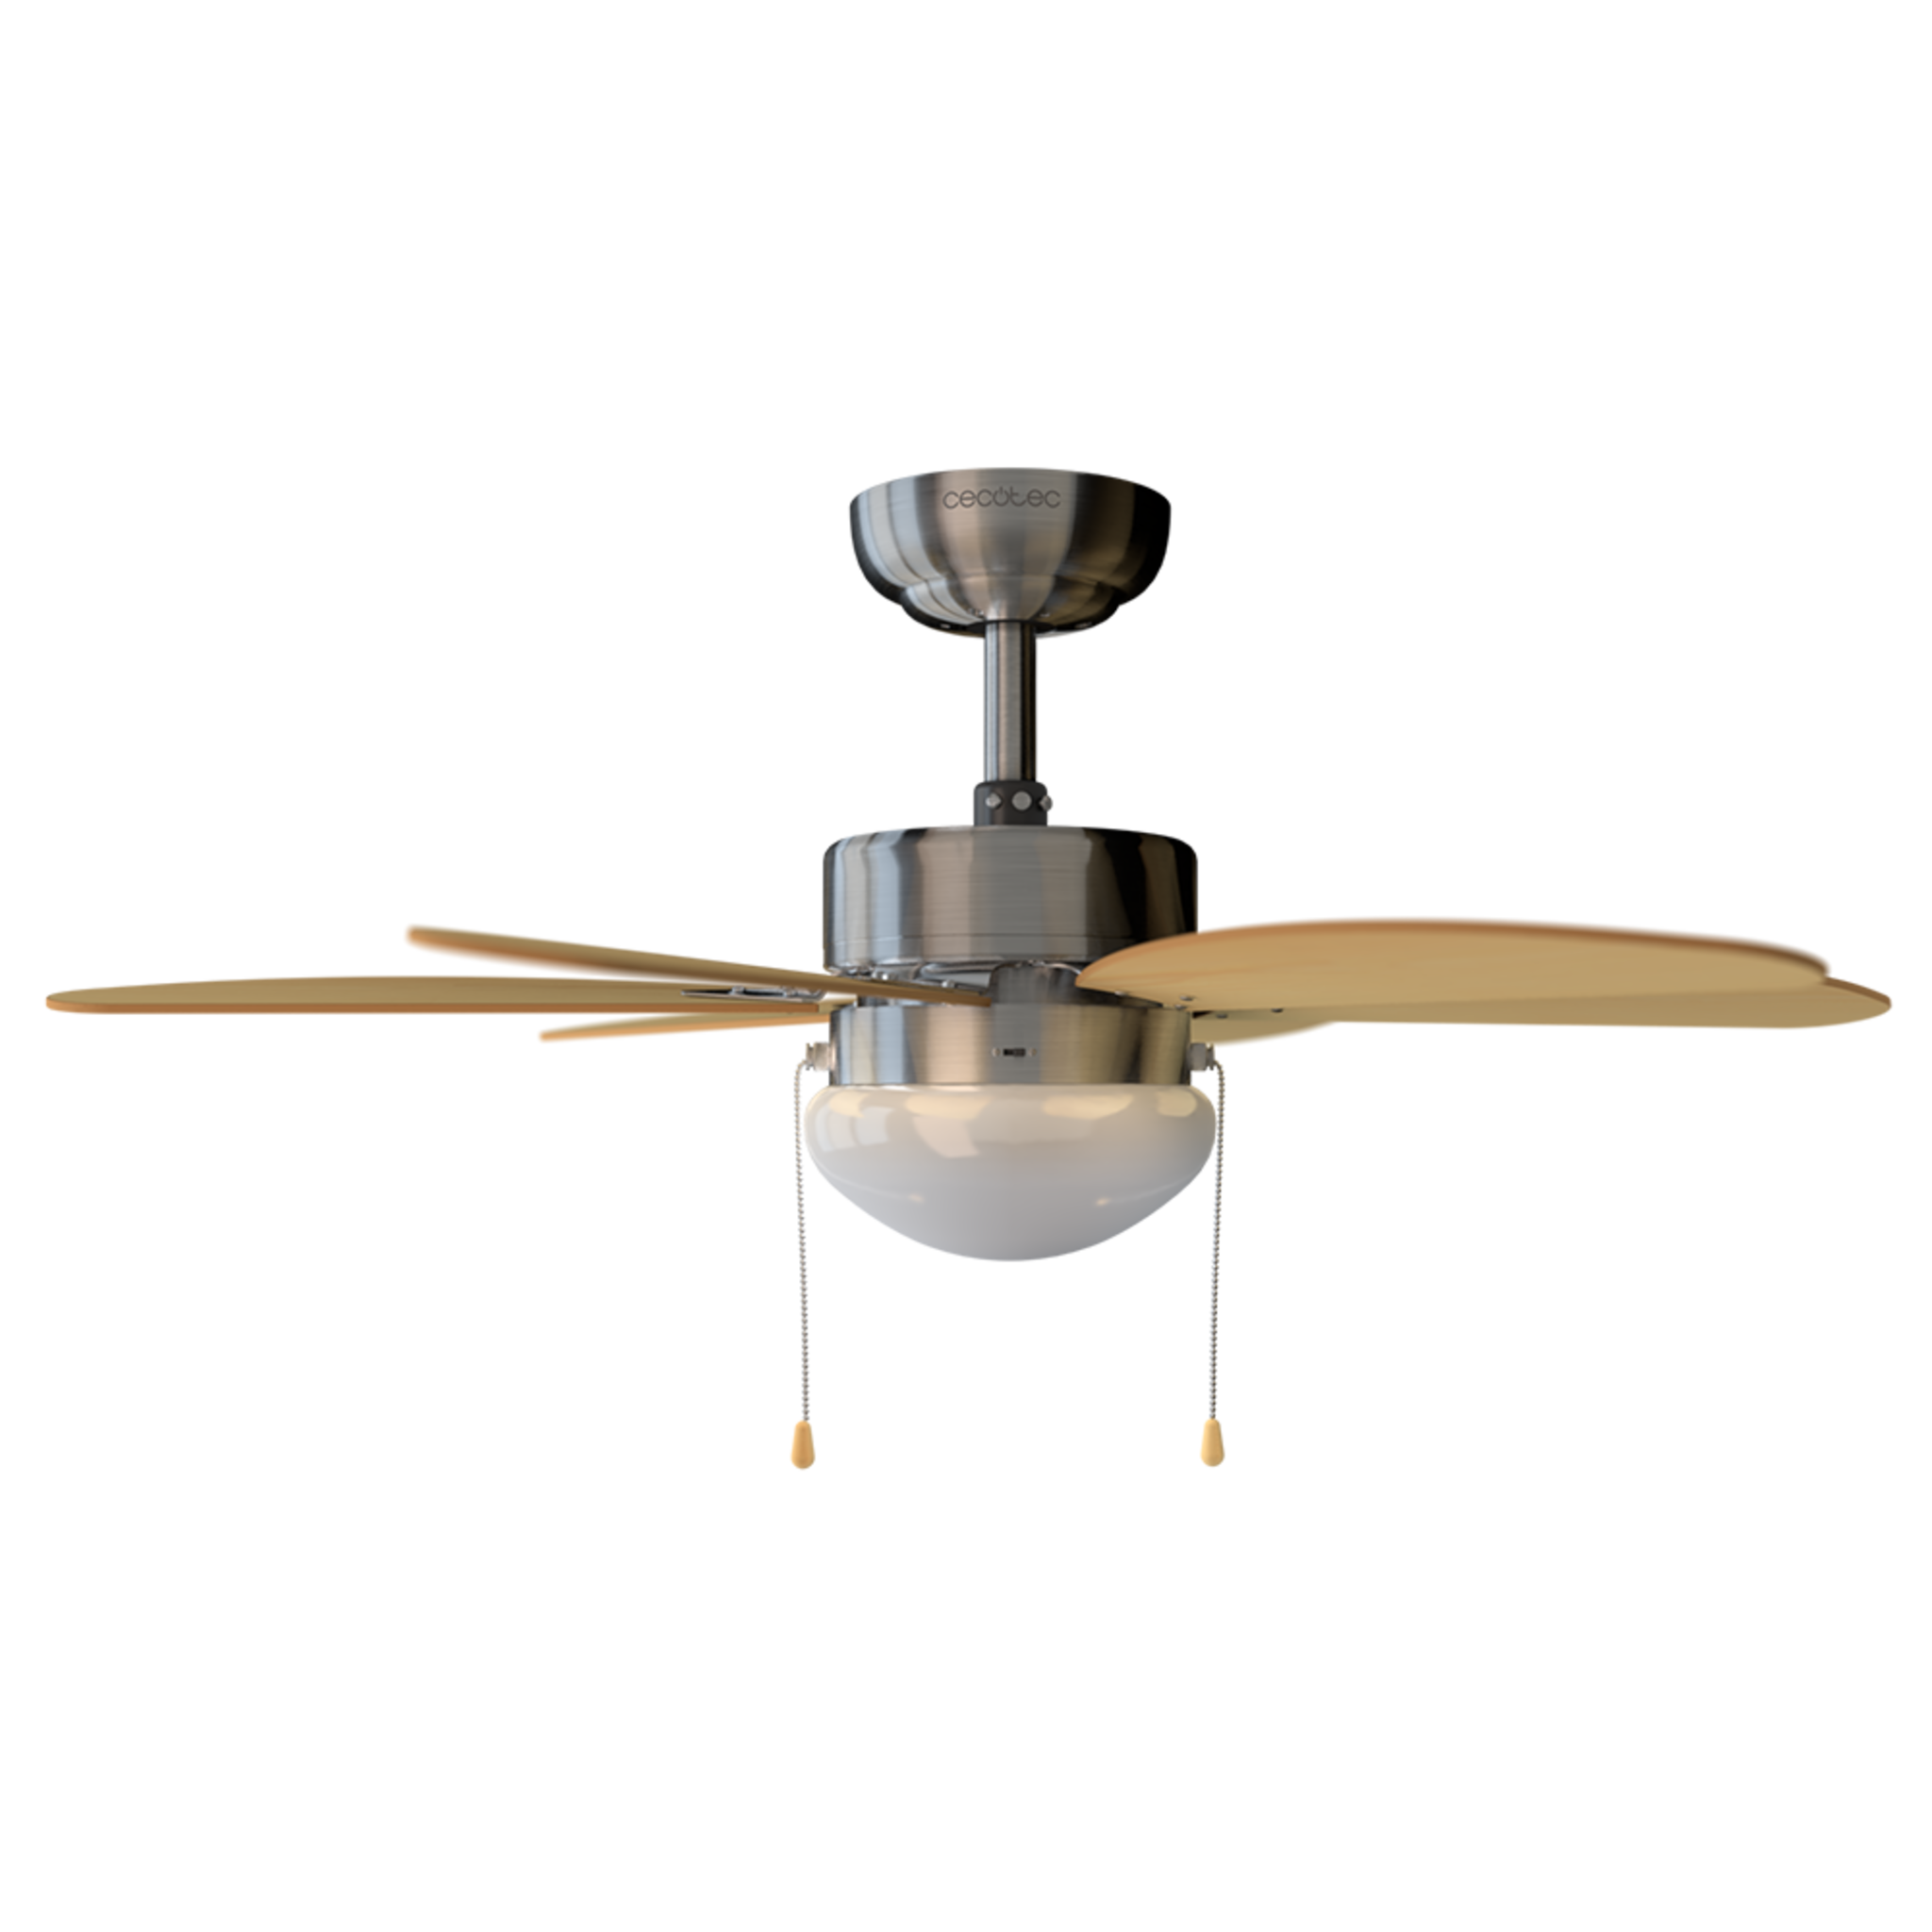 Ventilador de Techo con Luz EnergySilence Aero 350. 50 W, Bajo consumo, 81 cm de Diámetro, 6 Aspas Reversibles, 3 Velocidades, Función Invierno, Acabado en blanco/madera